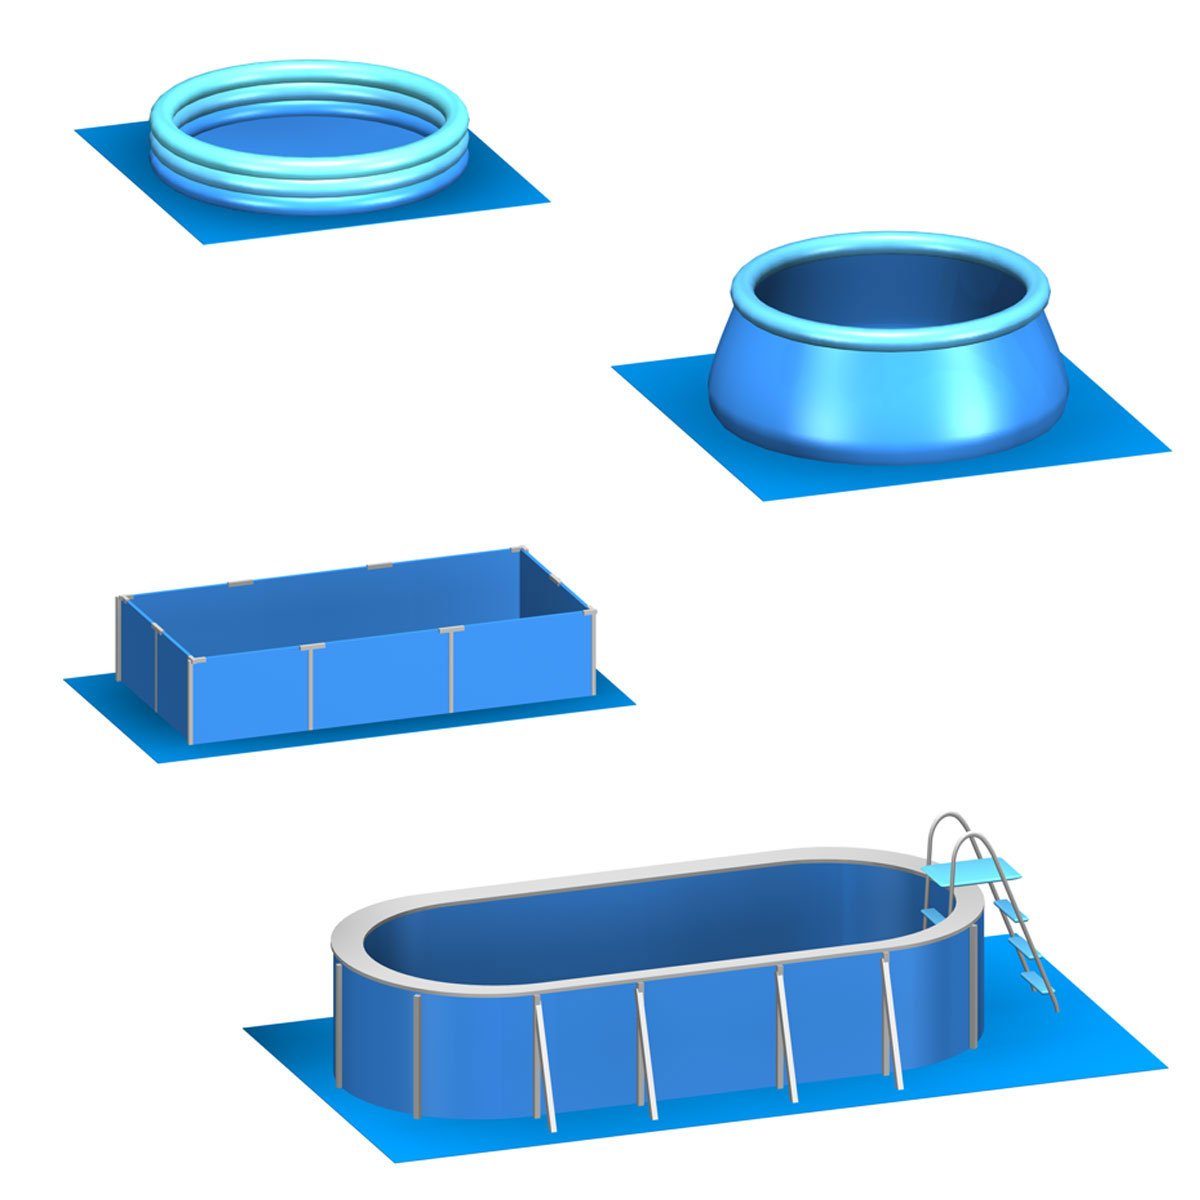 m² Poolunterlage 14 Set, Bodenmatte EVA Pool erweiterbares Matten 50x50 60 Stecksystem eyepower Blau